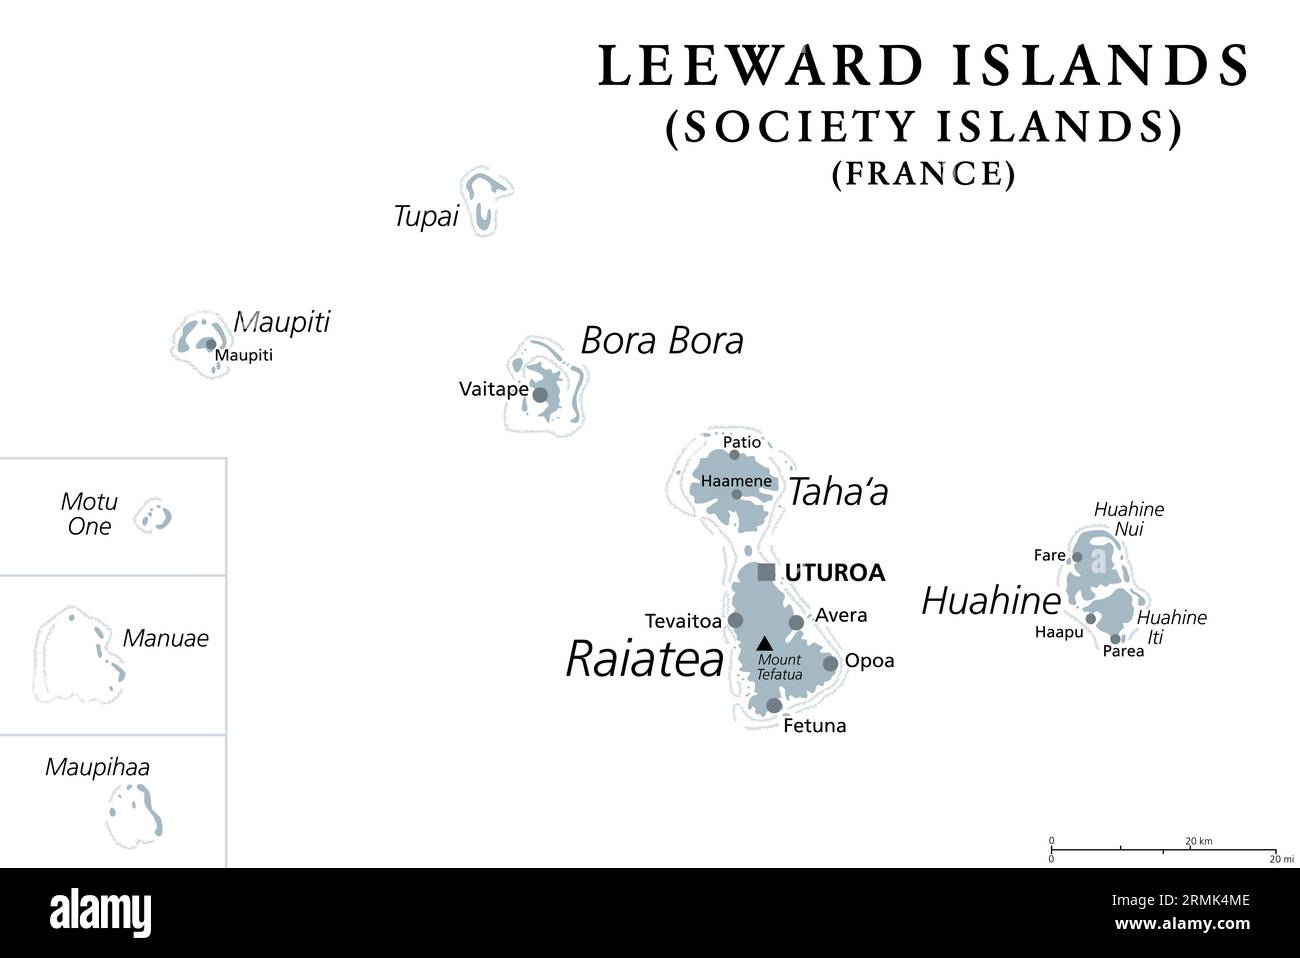 Leeward Islands, graue politische Karte. Westlicher Teil der Gesellschaftsinseln in Französisch-Polynesien. Französische Überseekollektivität im Südpazifik. Stockfoto